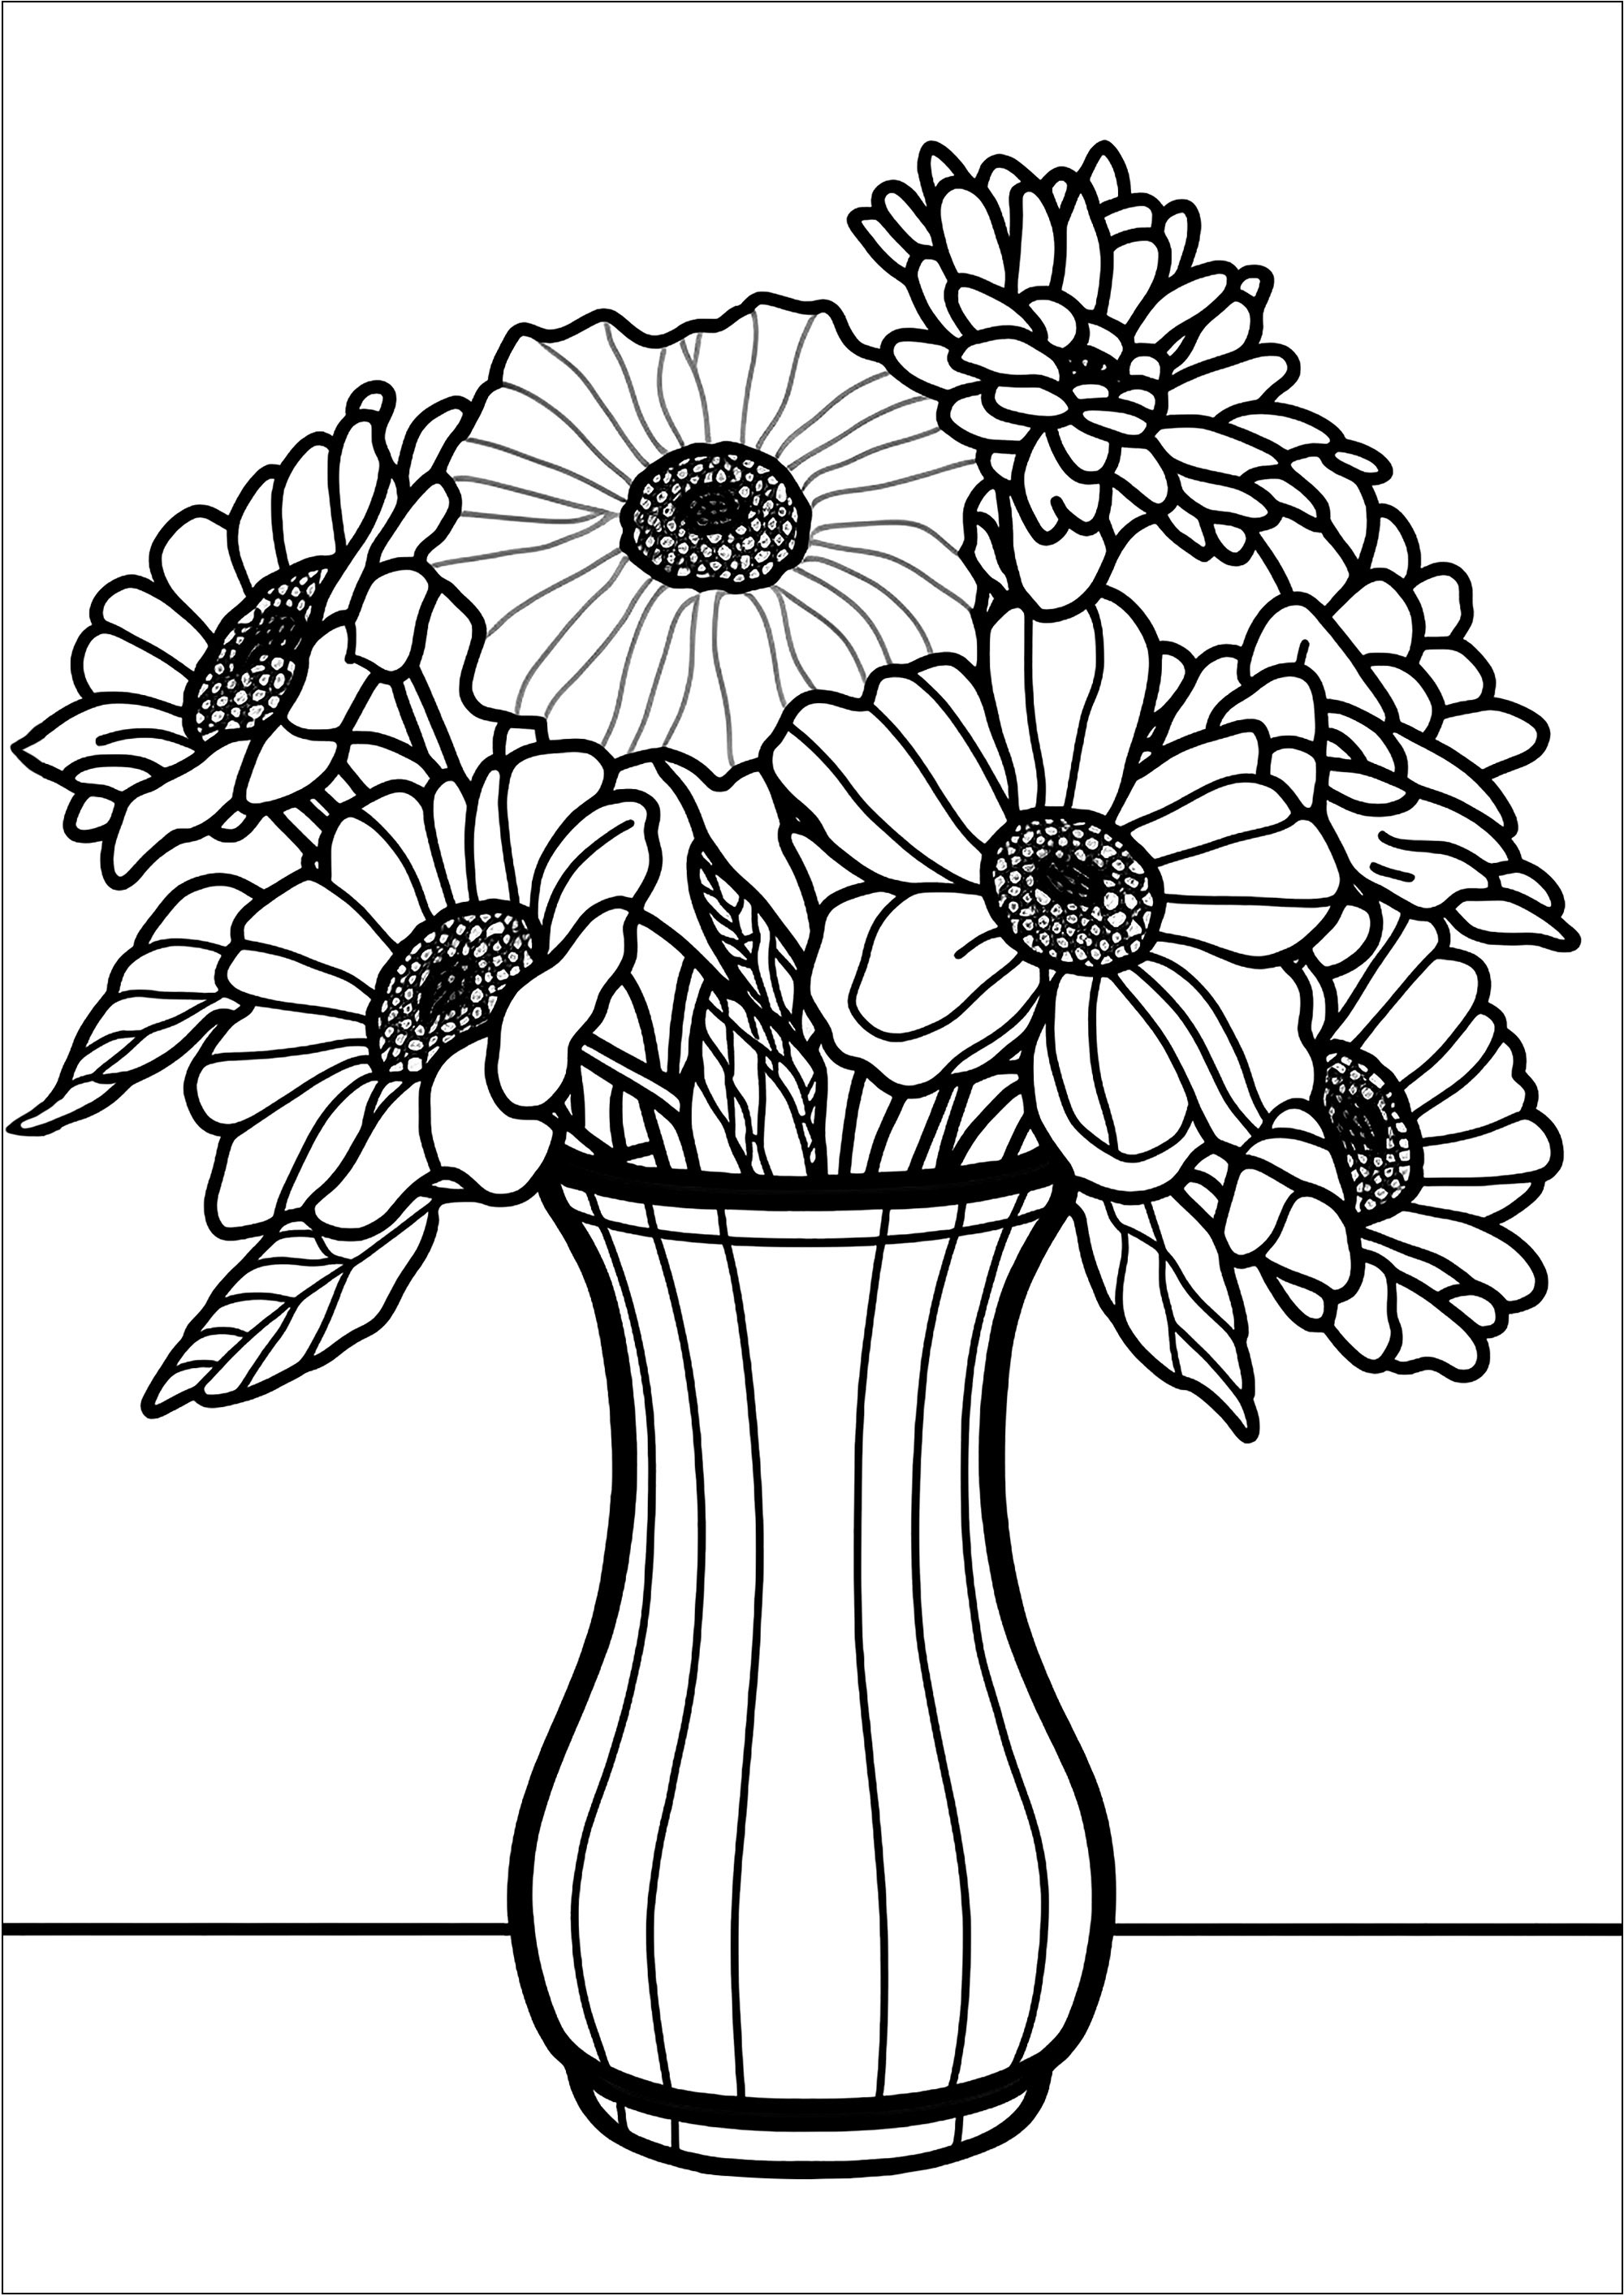 Desenho de linha grossa de um ramo de Flores num vaso. As crianças podem divertir-se a escolher cores diferentes para cada flor e para o vaso. Podem até acrescentar detalhes extra, como borboletas ou pequenos animais, para tornar a sua criação ainda mais única.